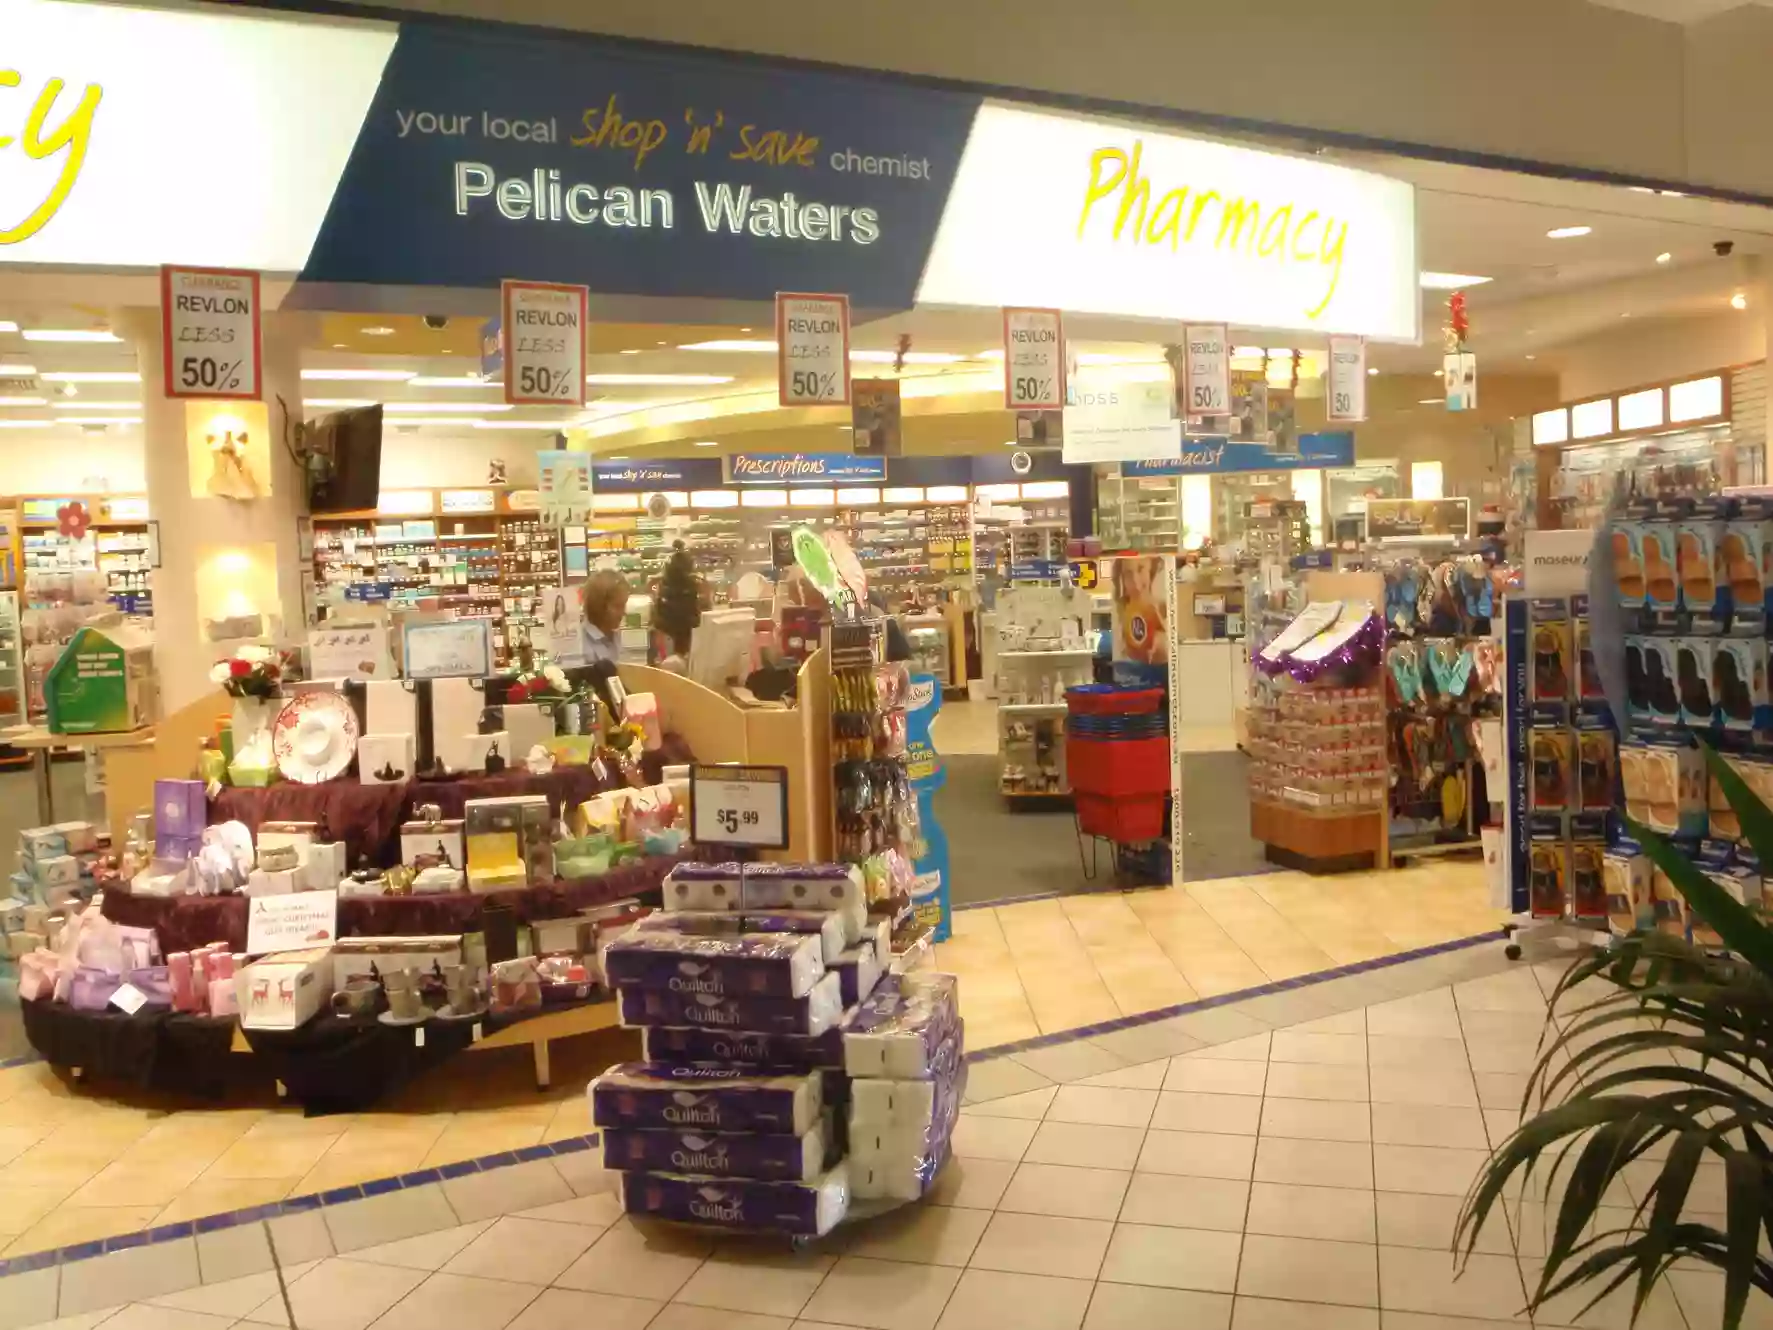 Pelican Waters Pharmacy